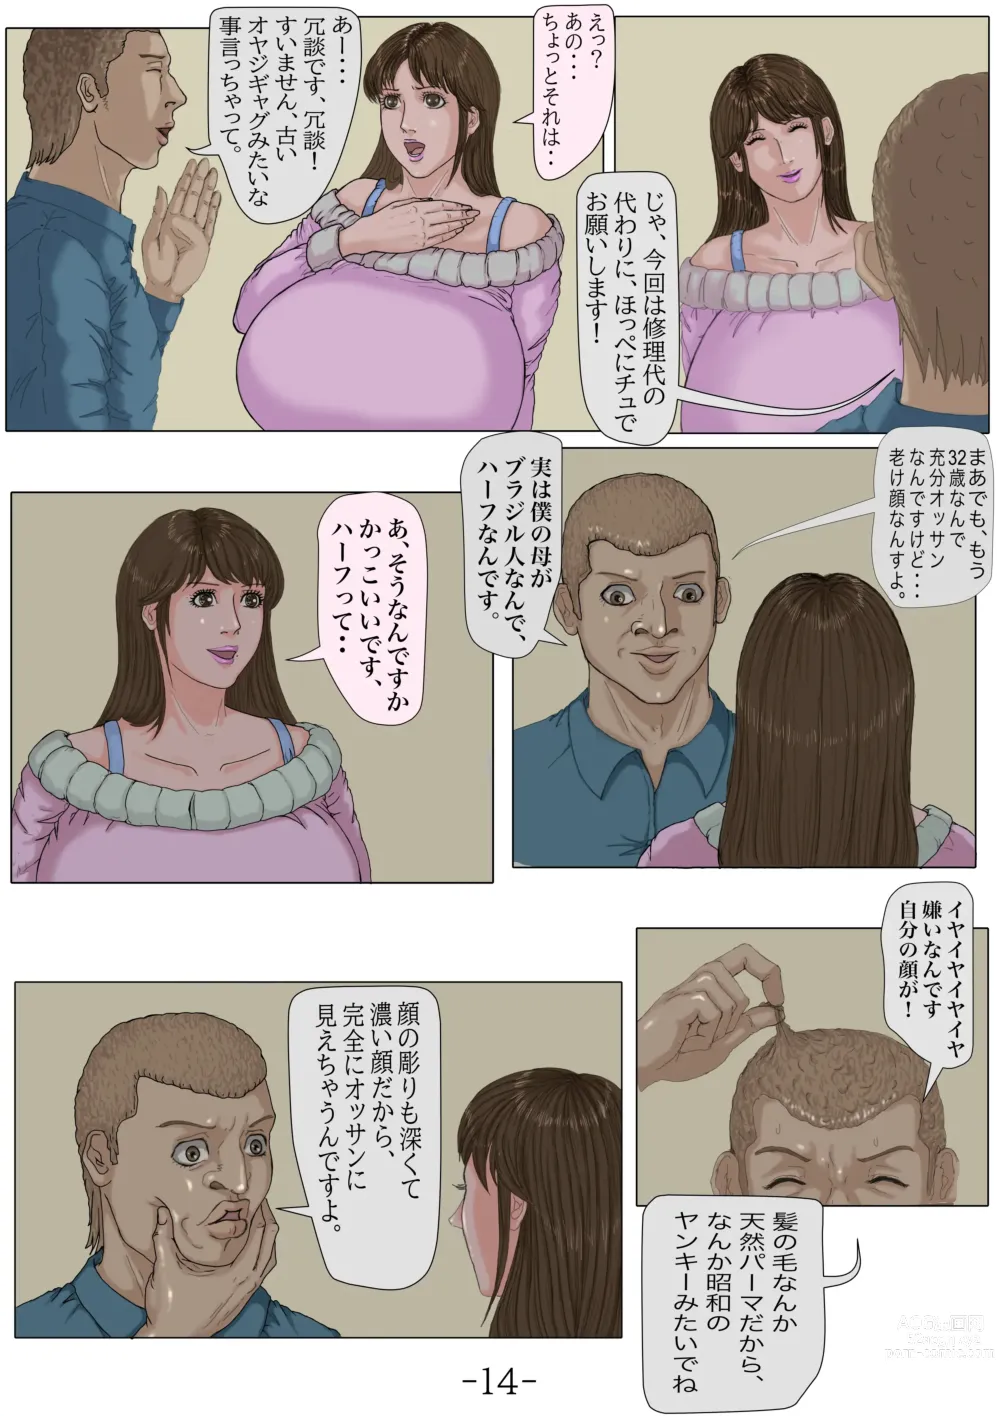 Page 15 of doujinshi Ninshinshitai mesu Haramasettai osu